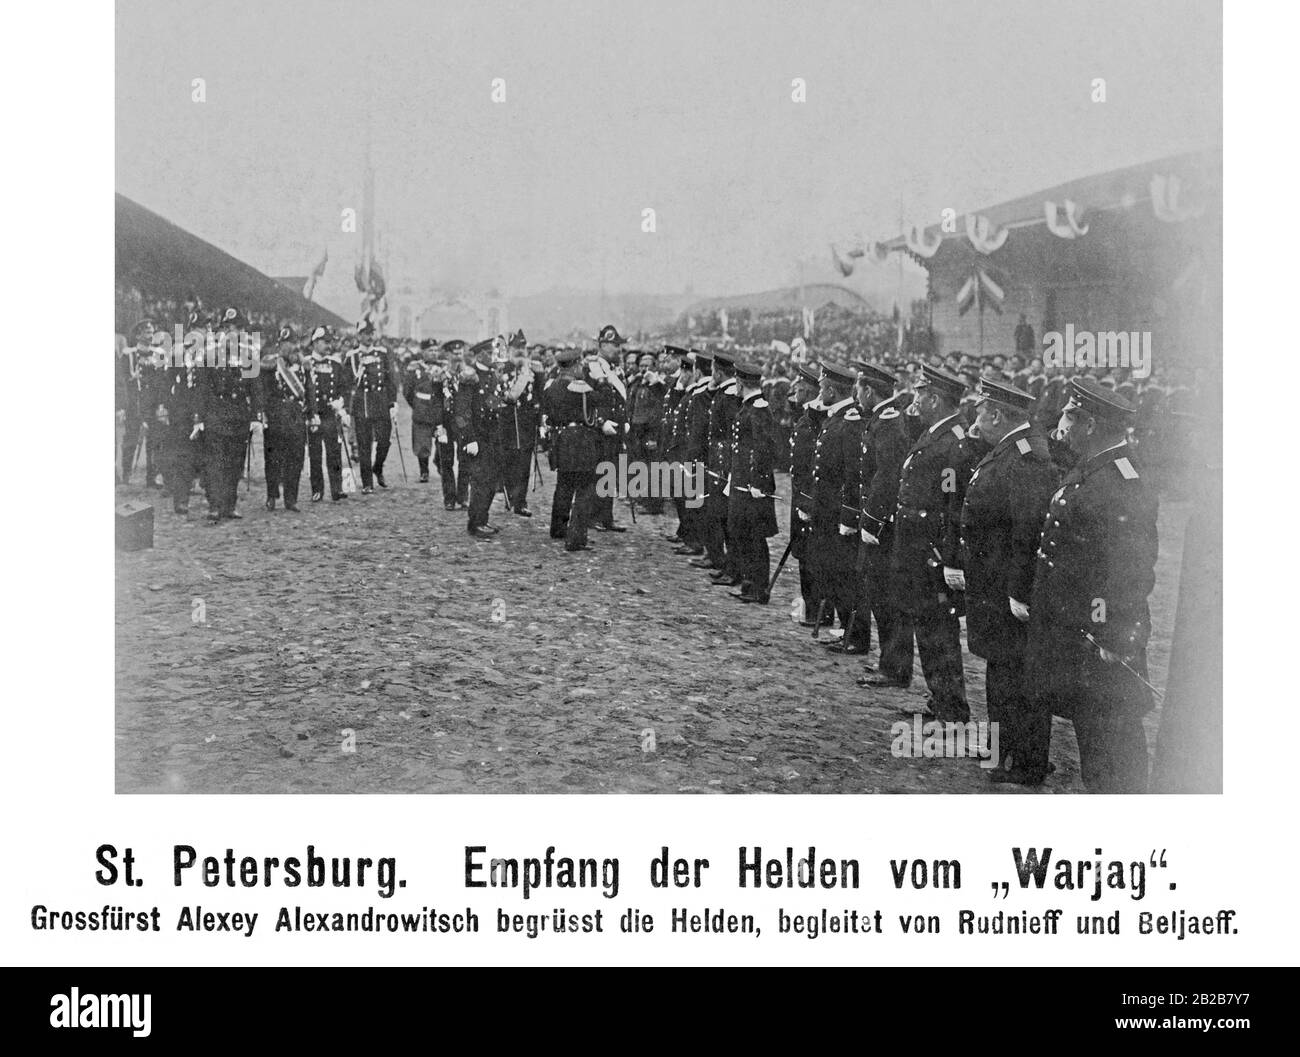 Réception des héros du navire "Warjag", qui avait remporté une bataille navale contre les Japonais le 09.02.1904 (pendant la guerre russo-japonaise). Le Grand-duc Alexey Alexandrovitch les accueille à leur arrivée à la gare de Nikolay à Saint-Pétersbourg. Banque D'Images